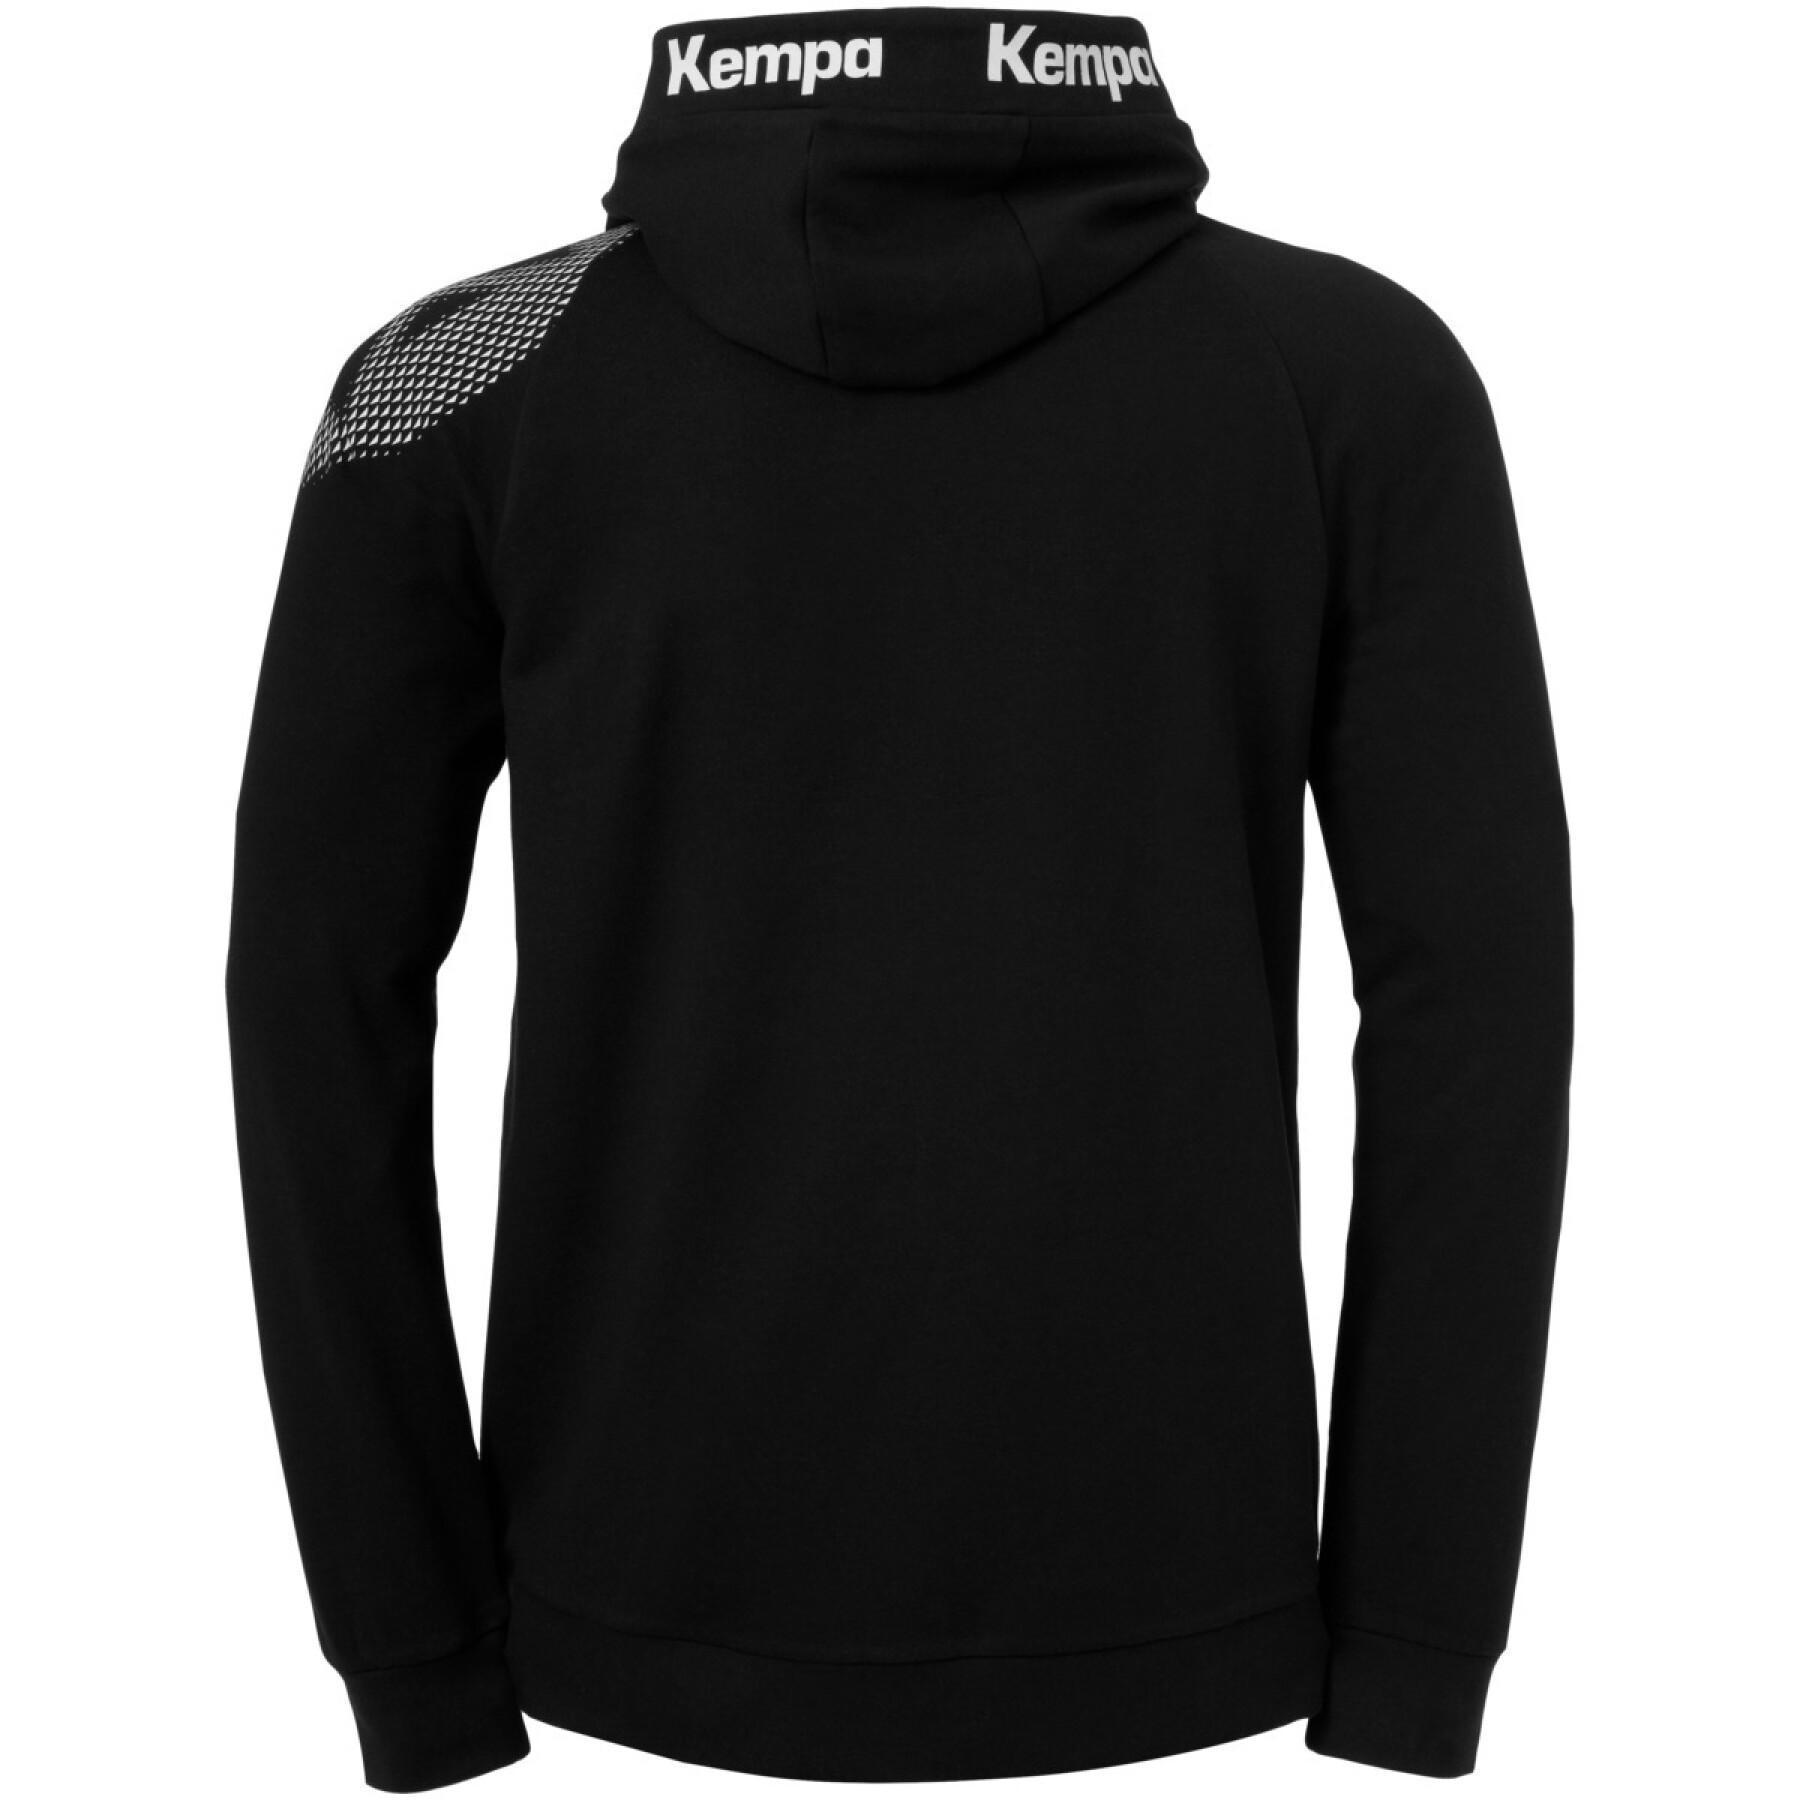 Sweatshirt encapuçado Kempa Core 26